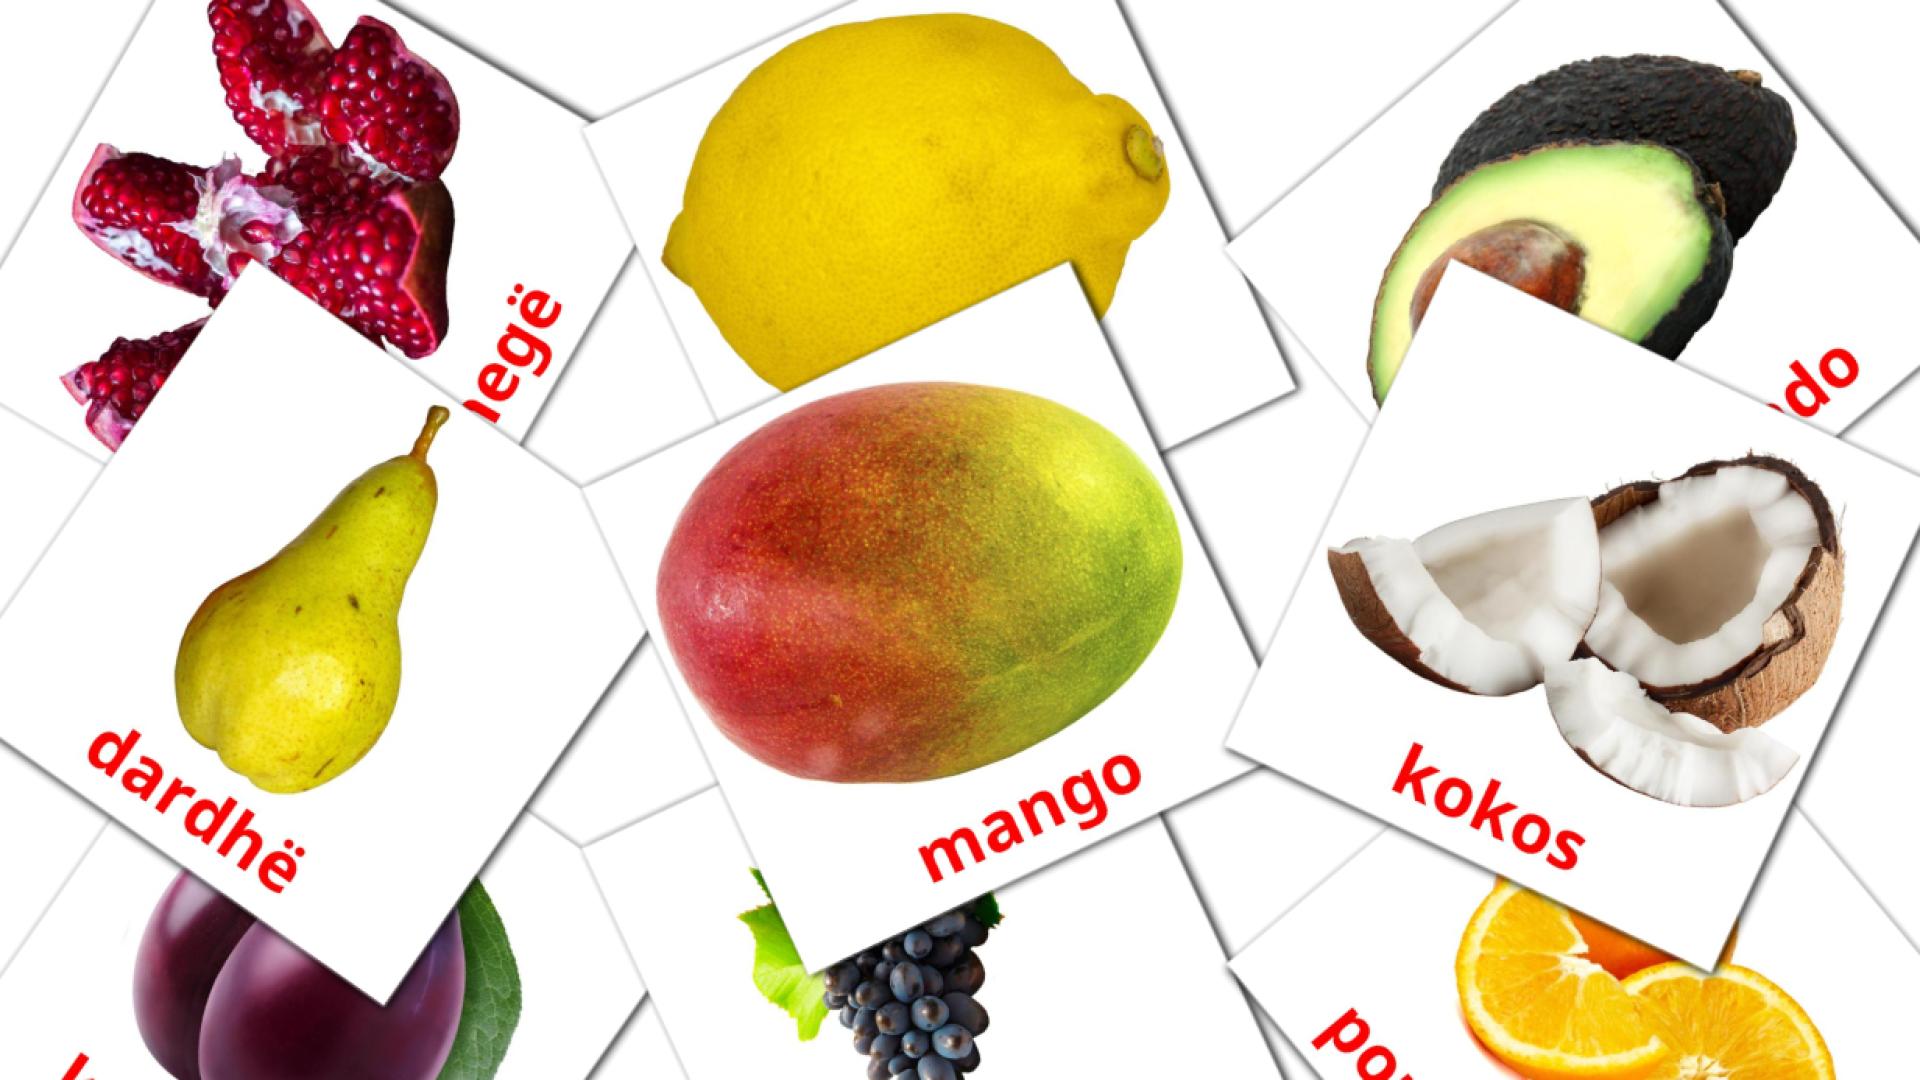 Frutas - tarjetas de vocabulario en albanés